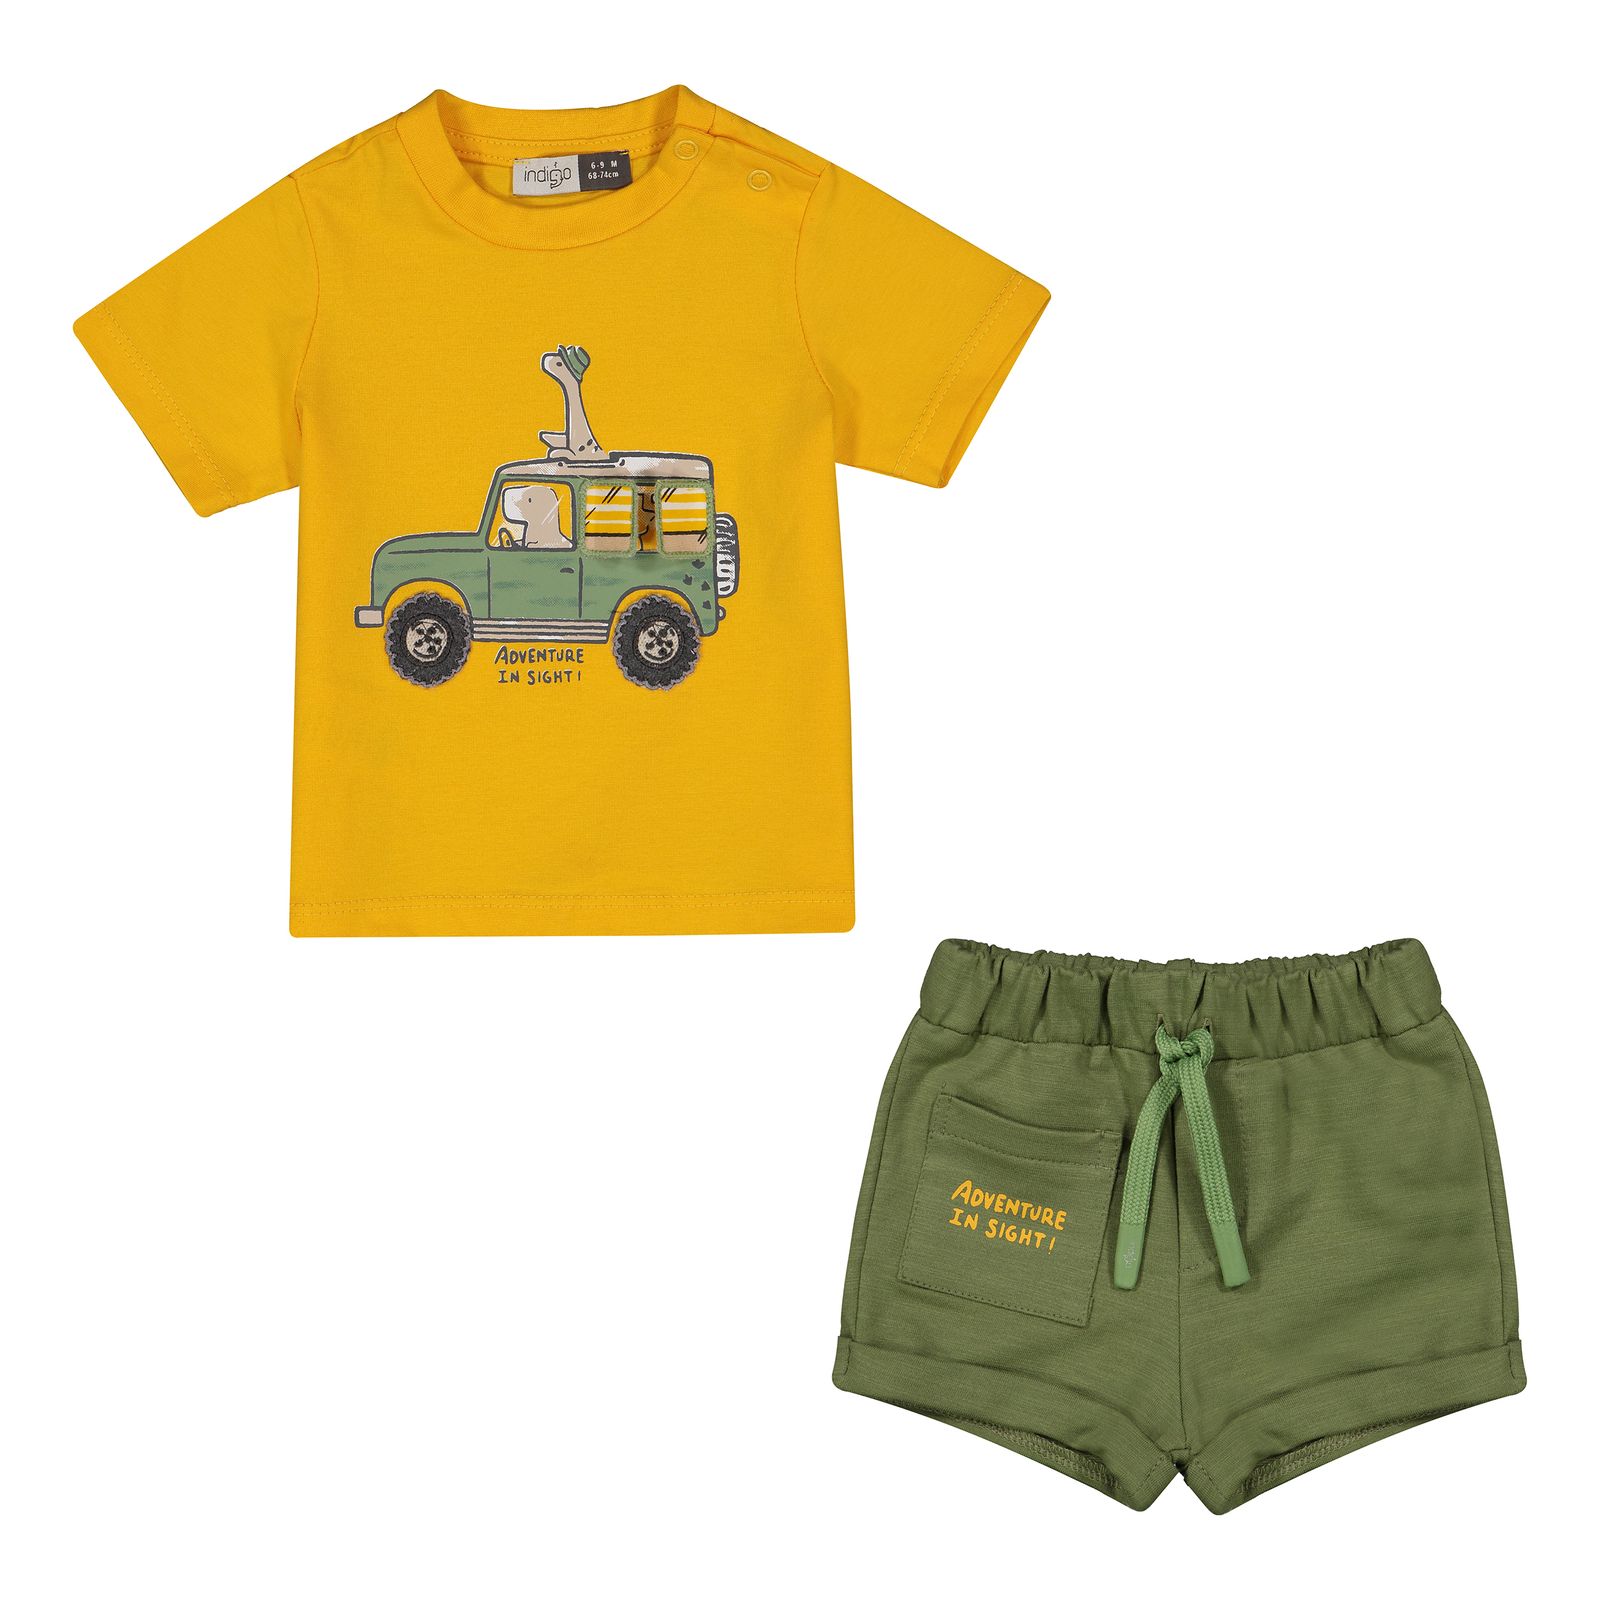 ست تی شرت و شلوارک نوزادی پسرانه ایندیگو مدل 13215 رنگ زرد -  - 1